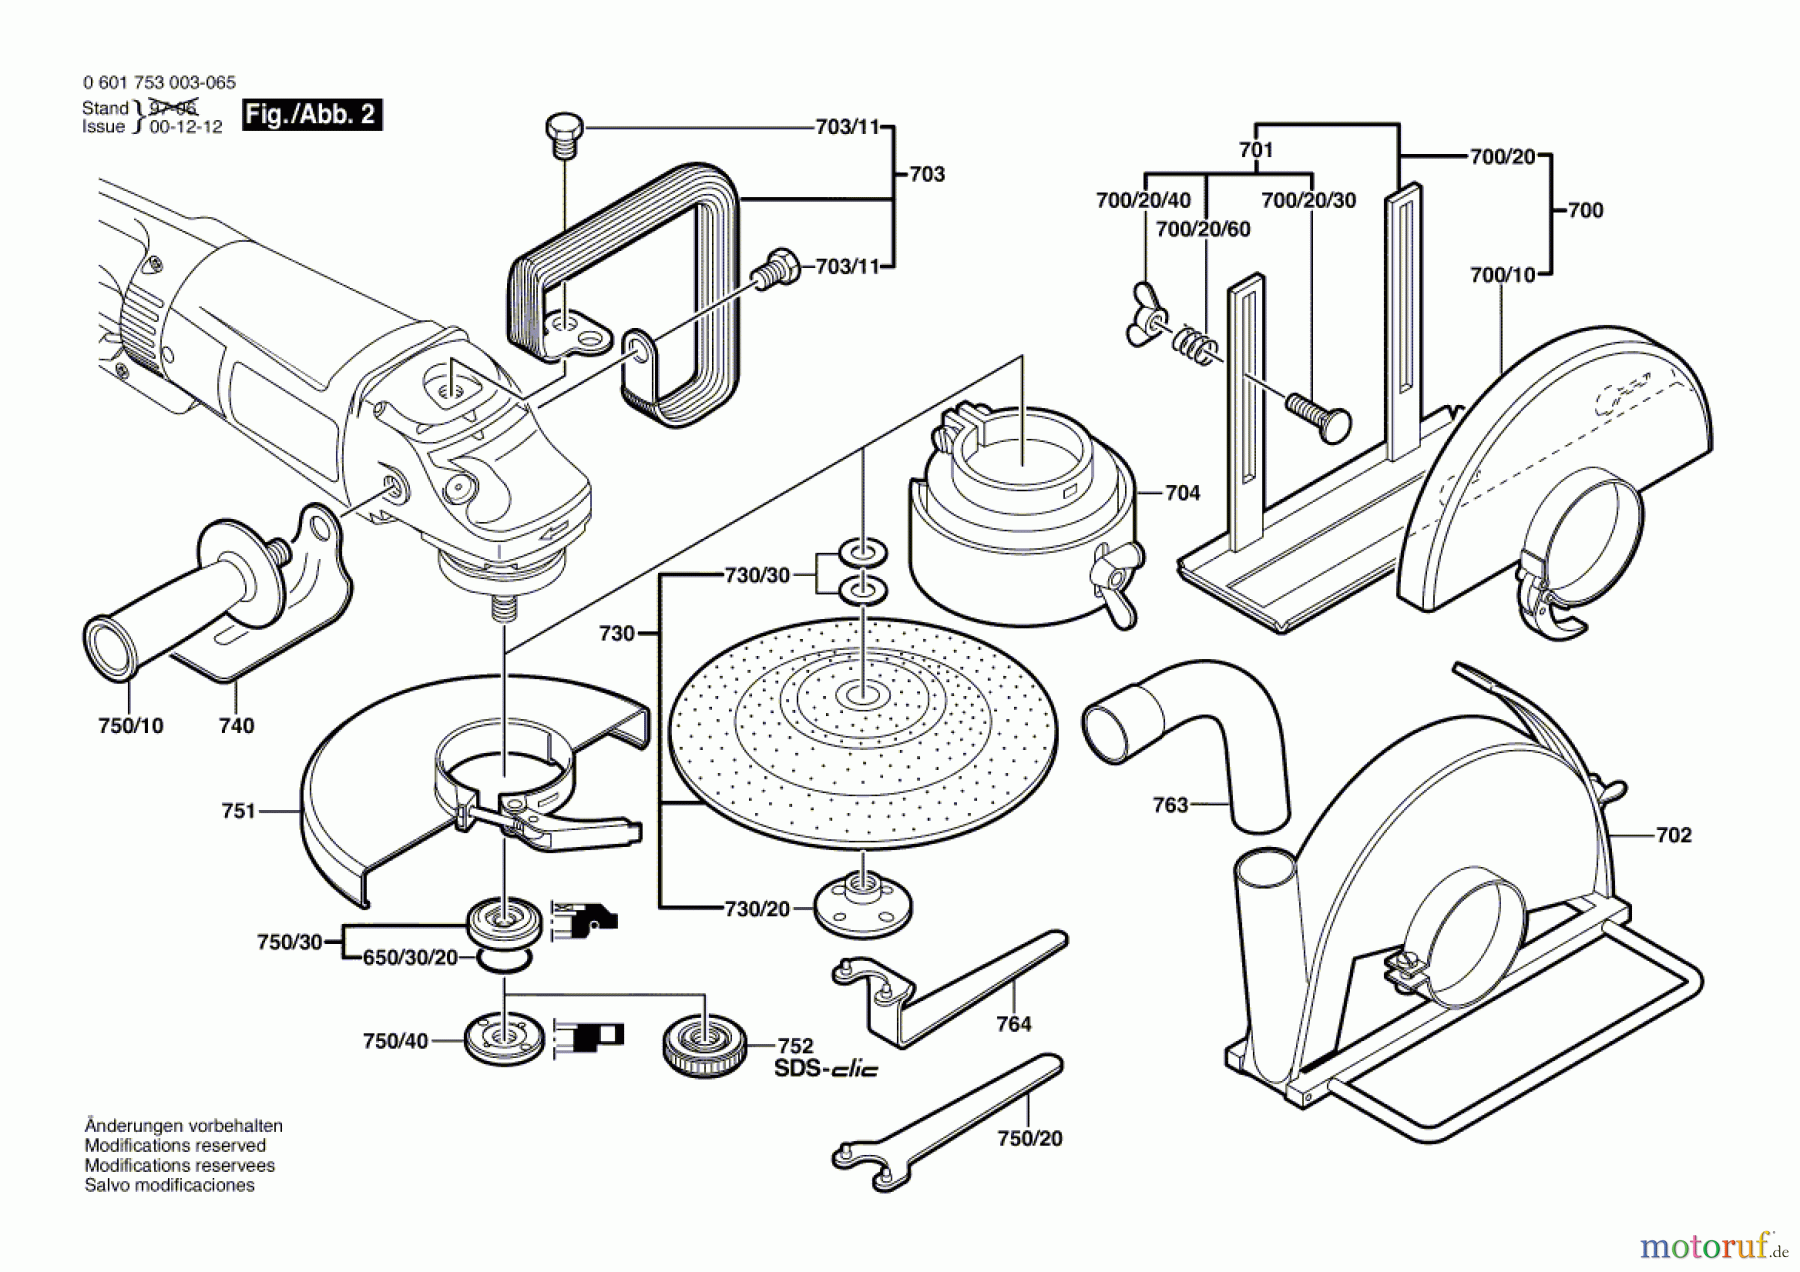  Bosch Werkzeug Winkelschleifer GWS 23-180 Seite 2